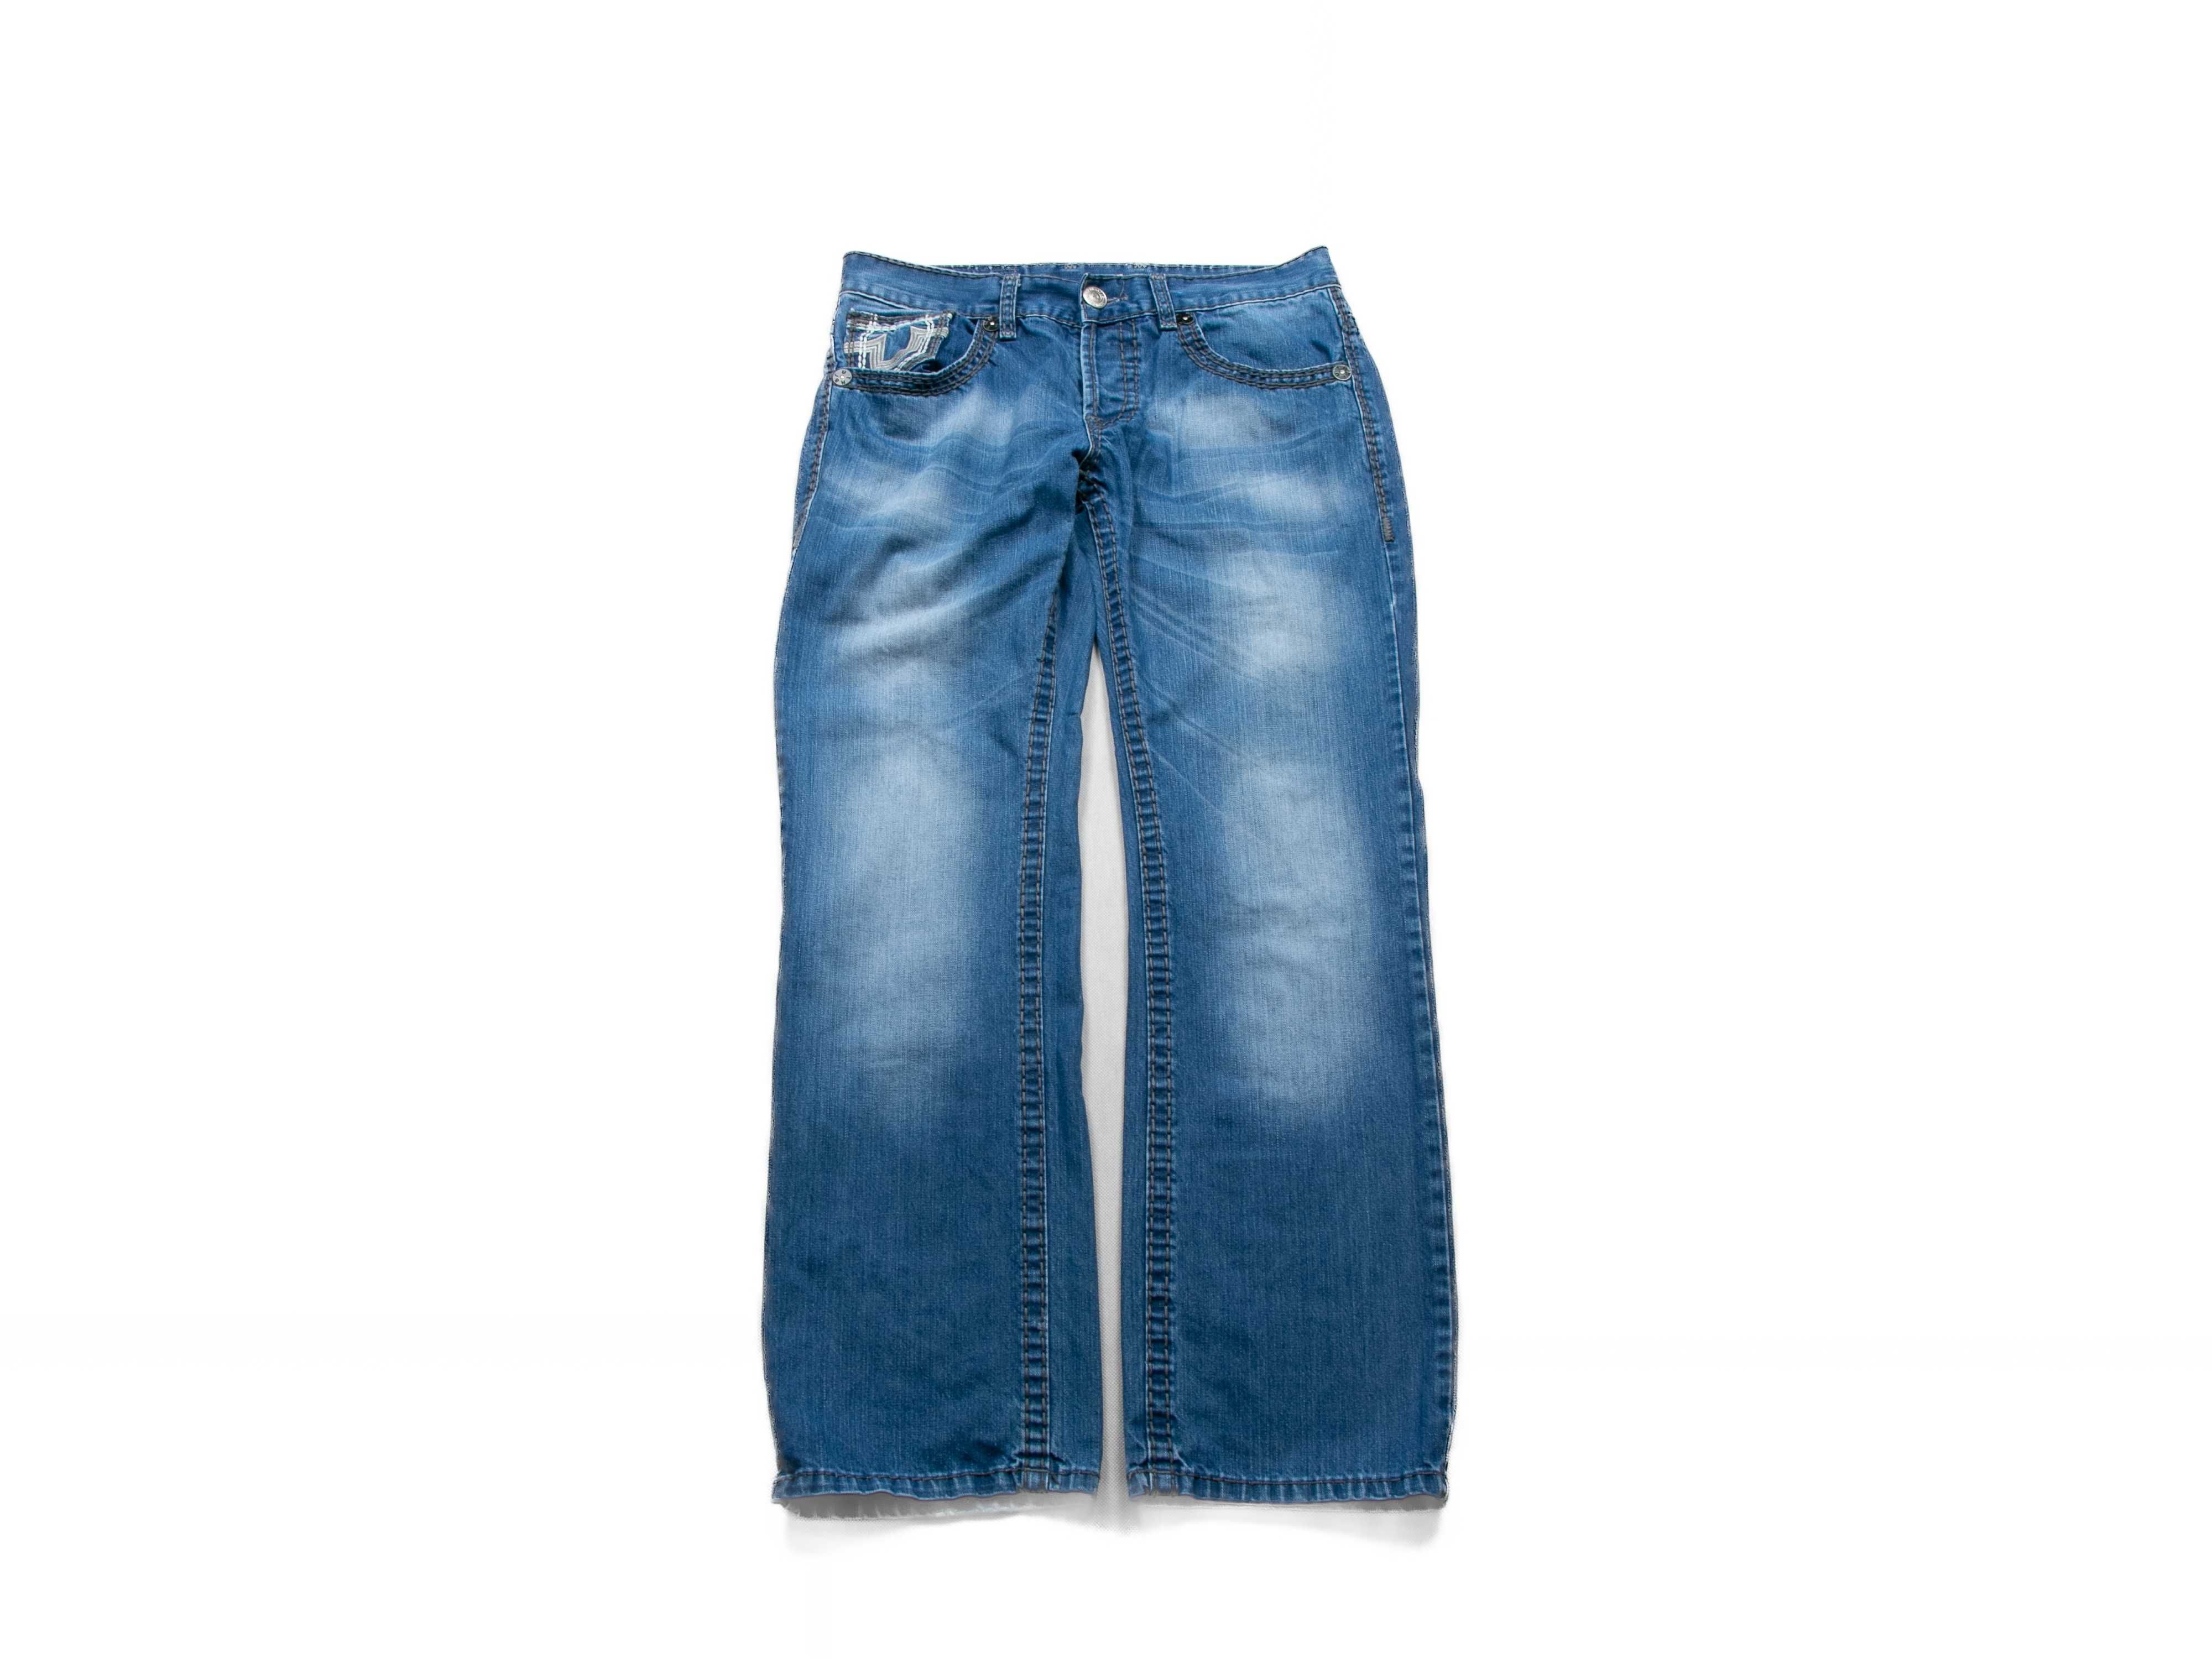 Spodnie jeansowe True Religion bobby super T 36us drip